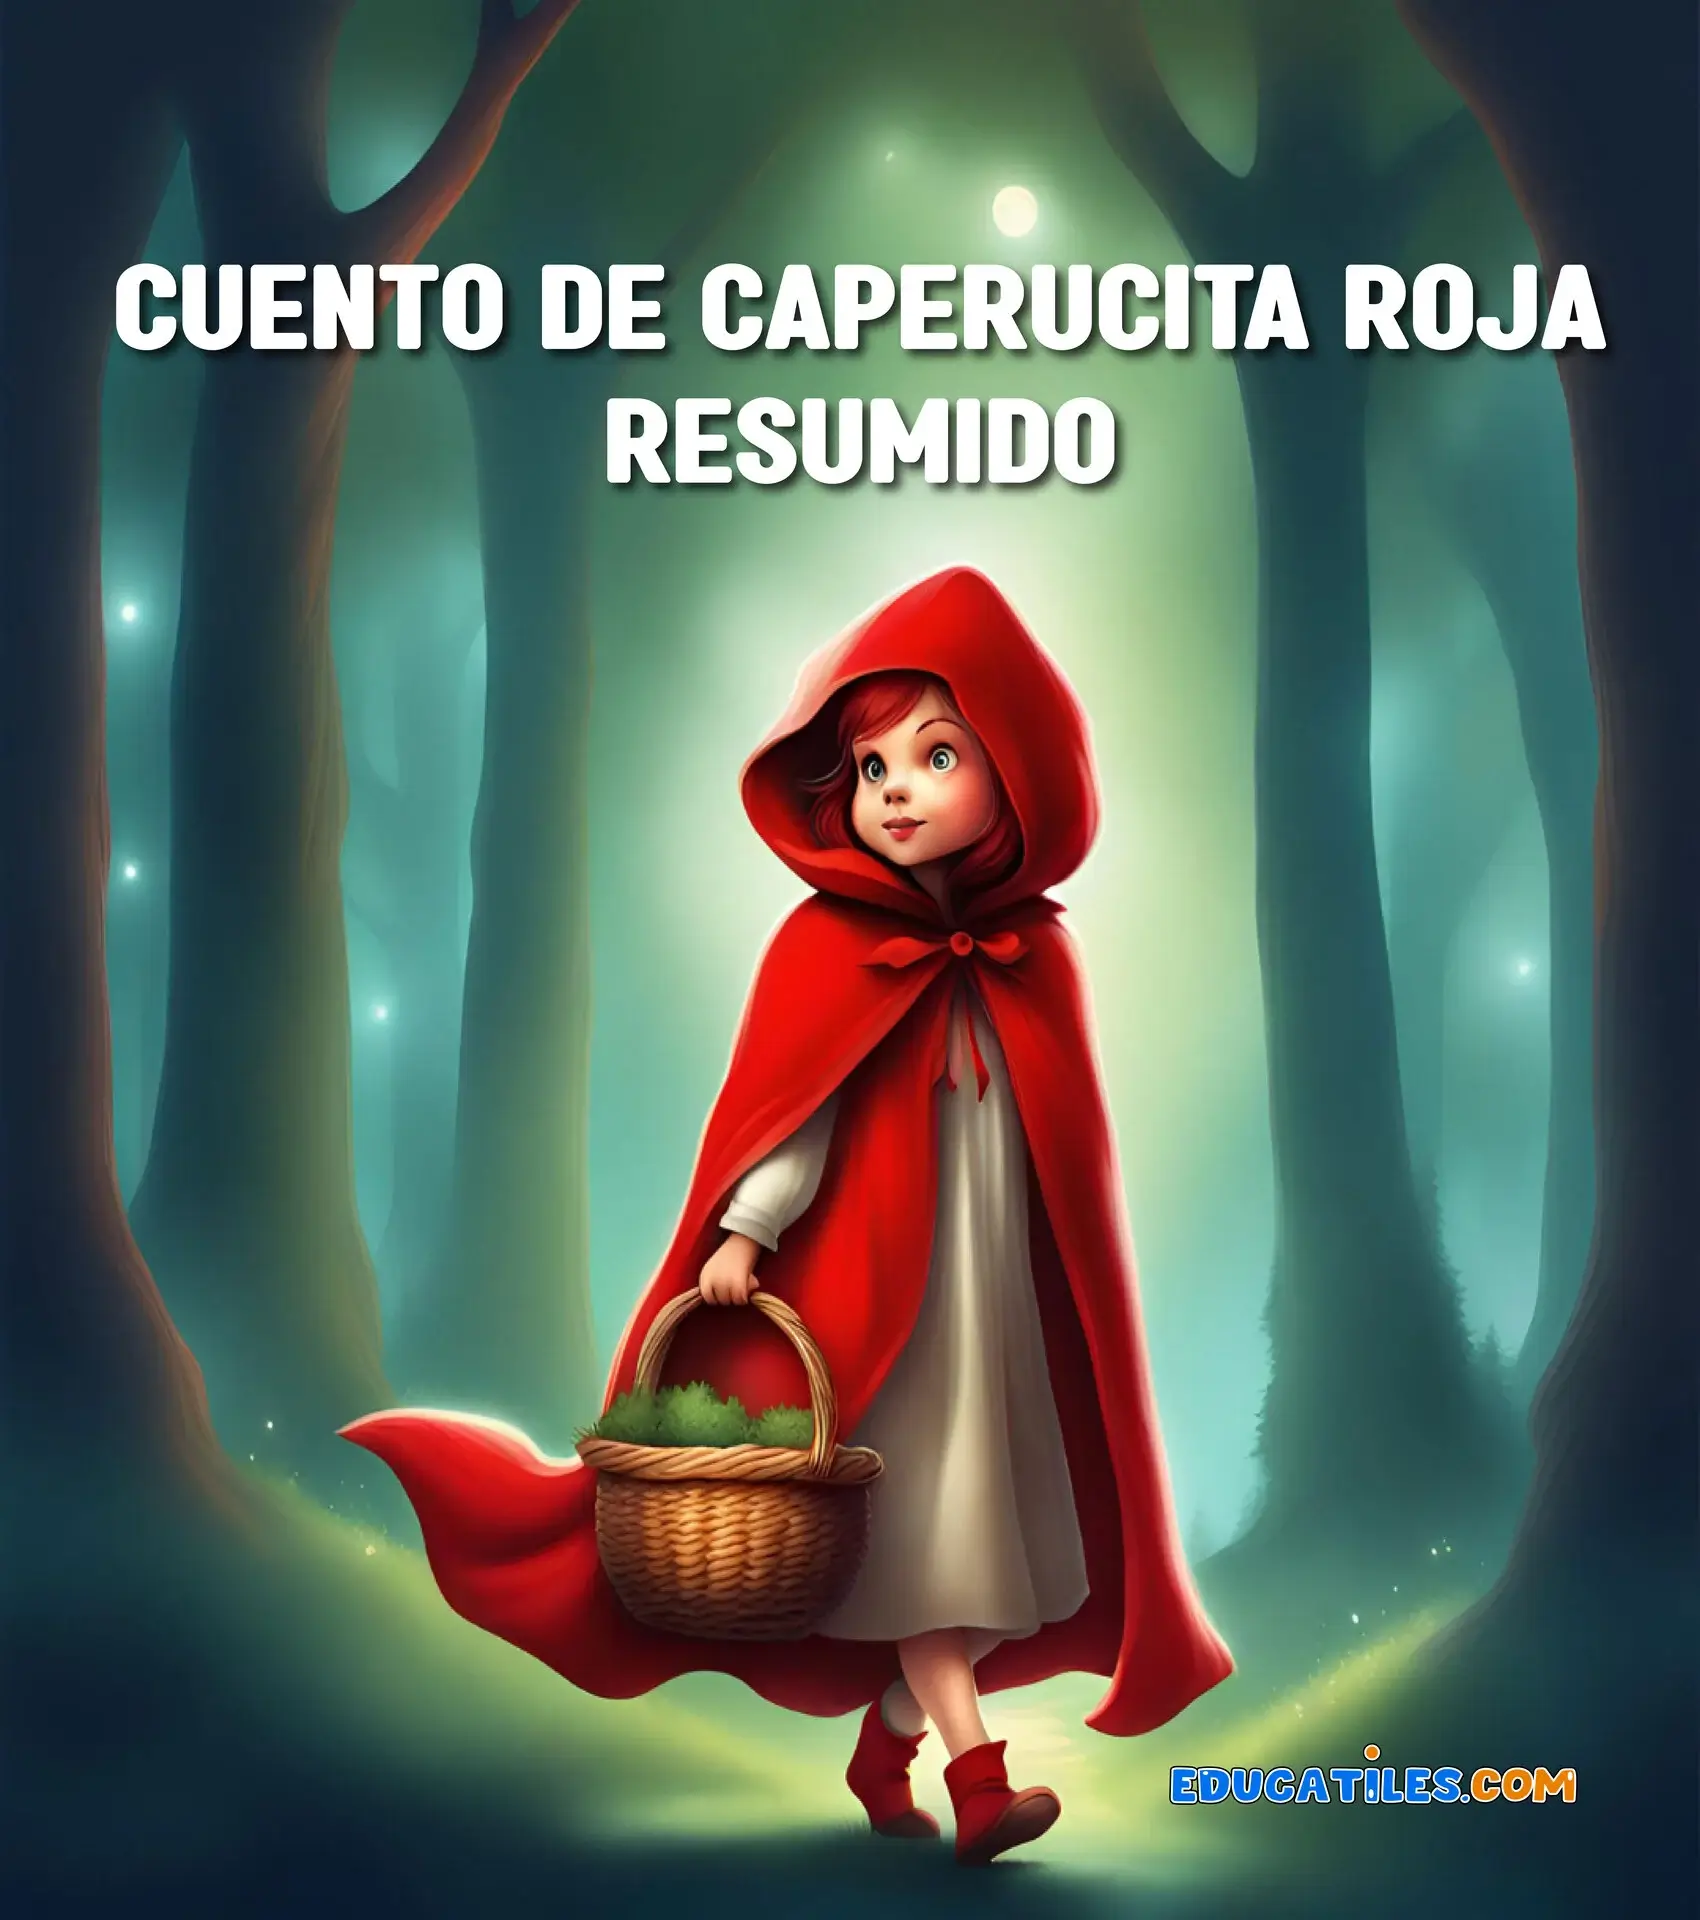 Cuento de caperucita roja resumido - Cuentos en español, Materiales  educativos, Historias cortas para niños y Orientación familiar